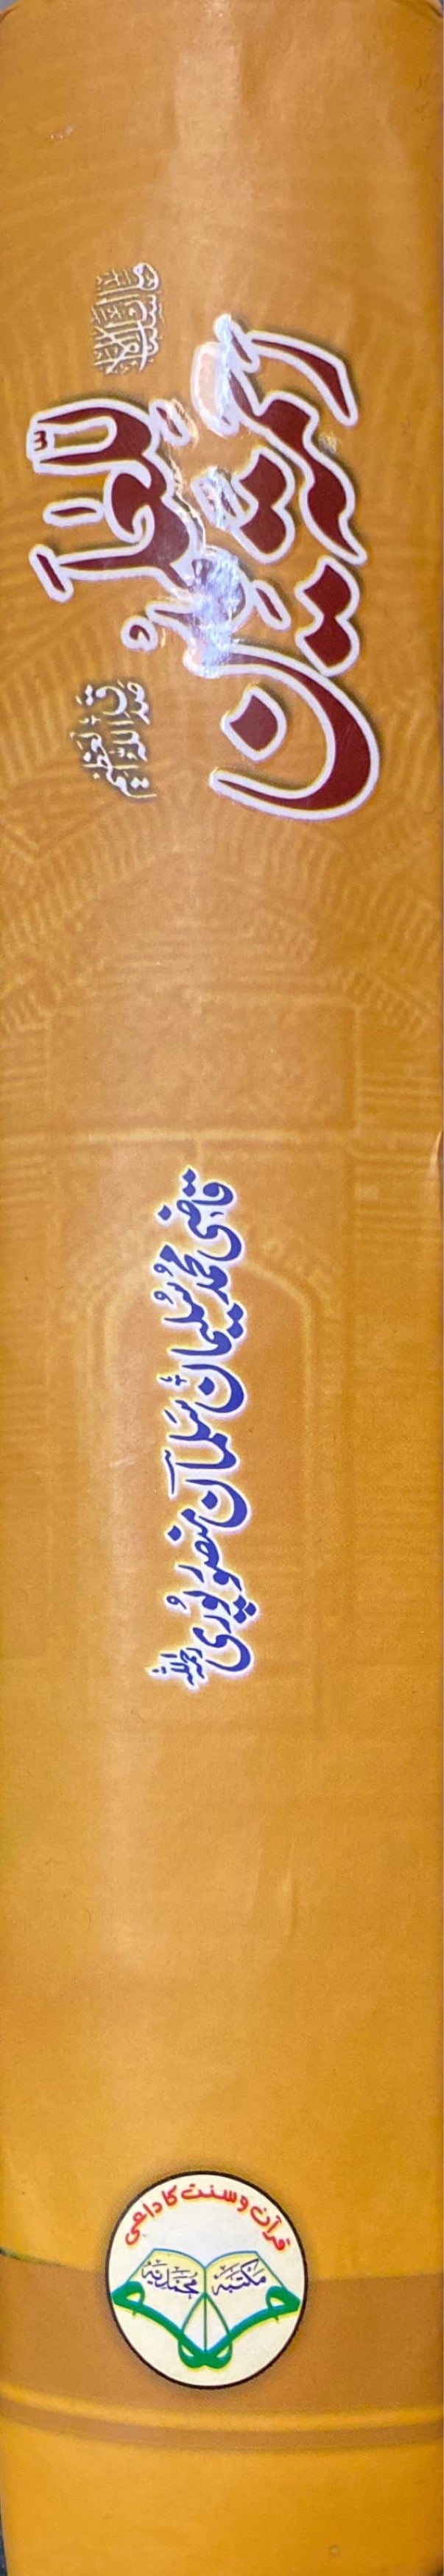 Urdu Rahmatan Lil Alimeen (Muhammadiya)